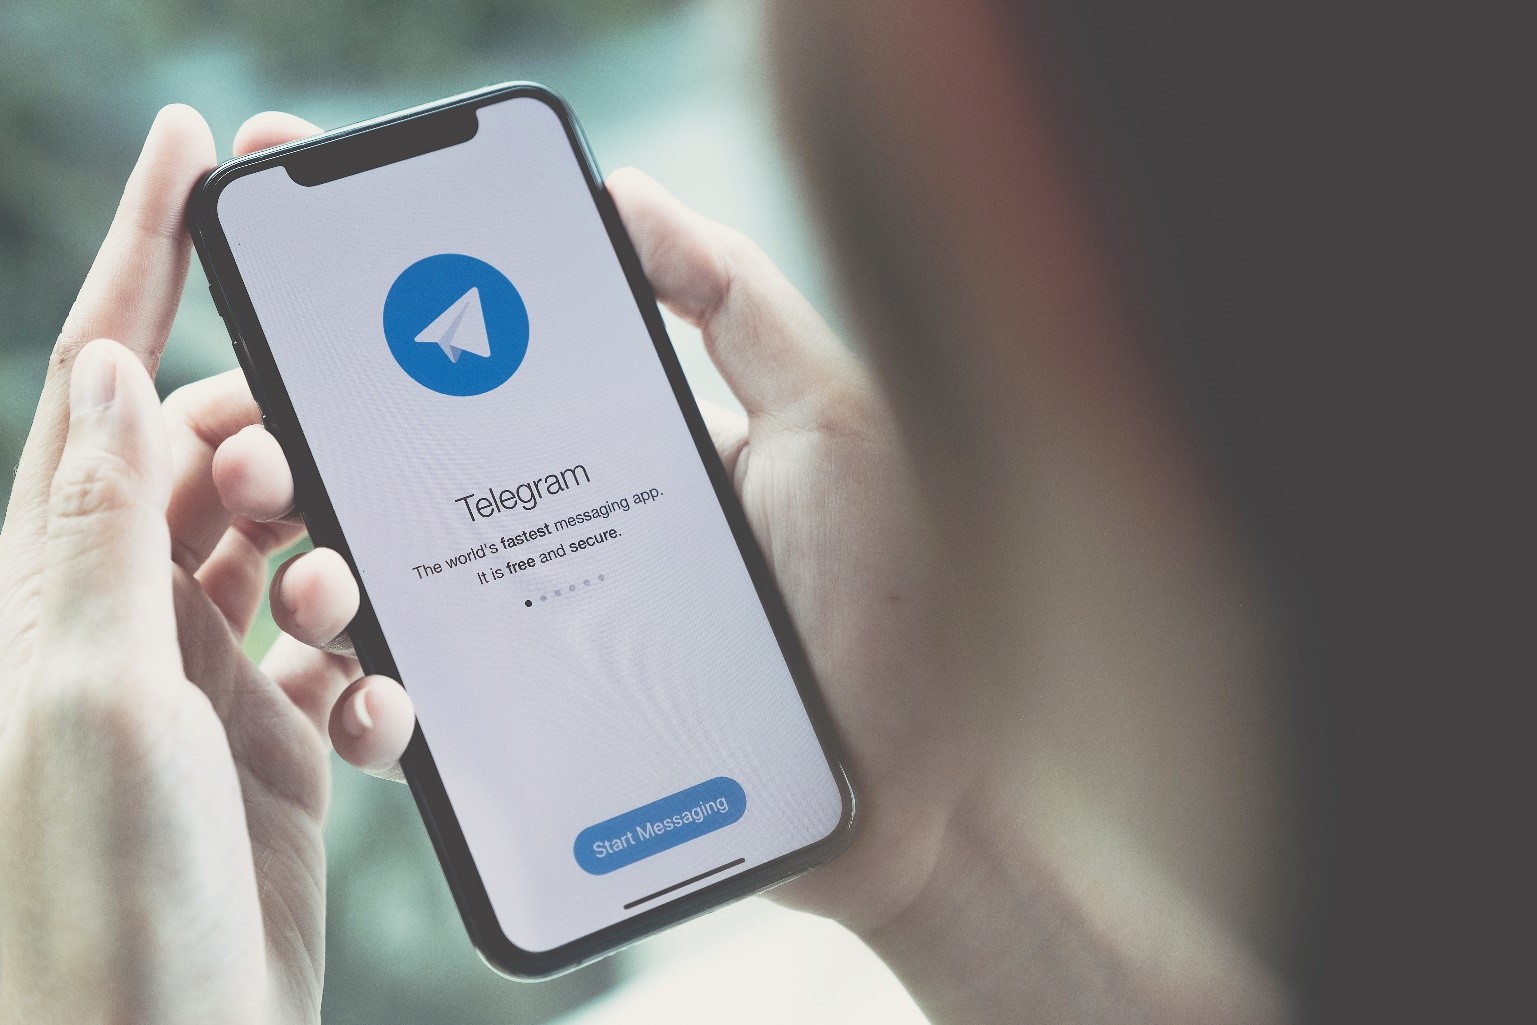 Telegram is going launch